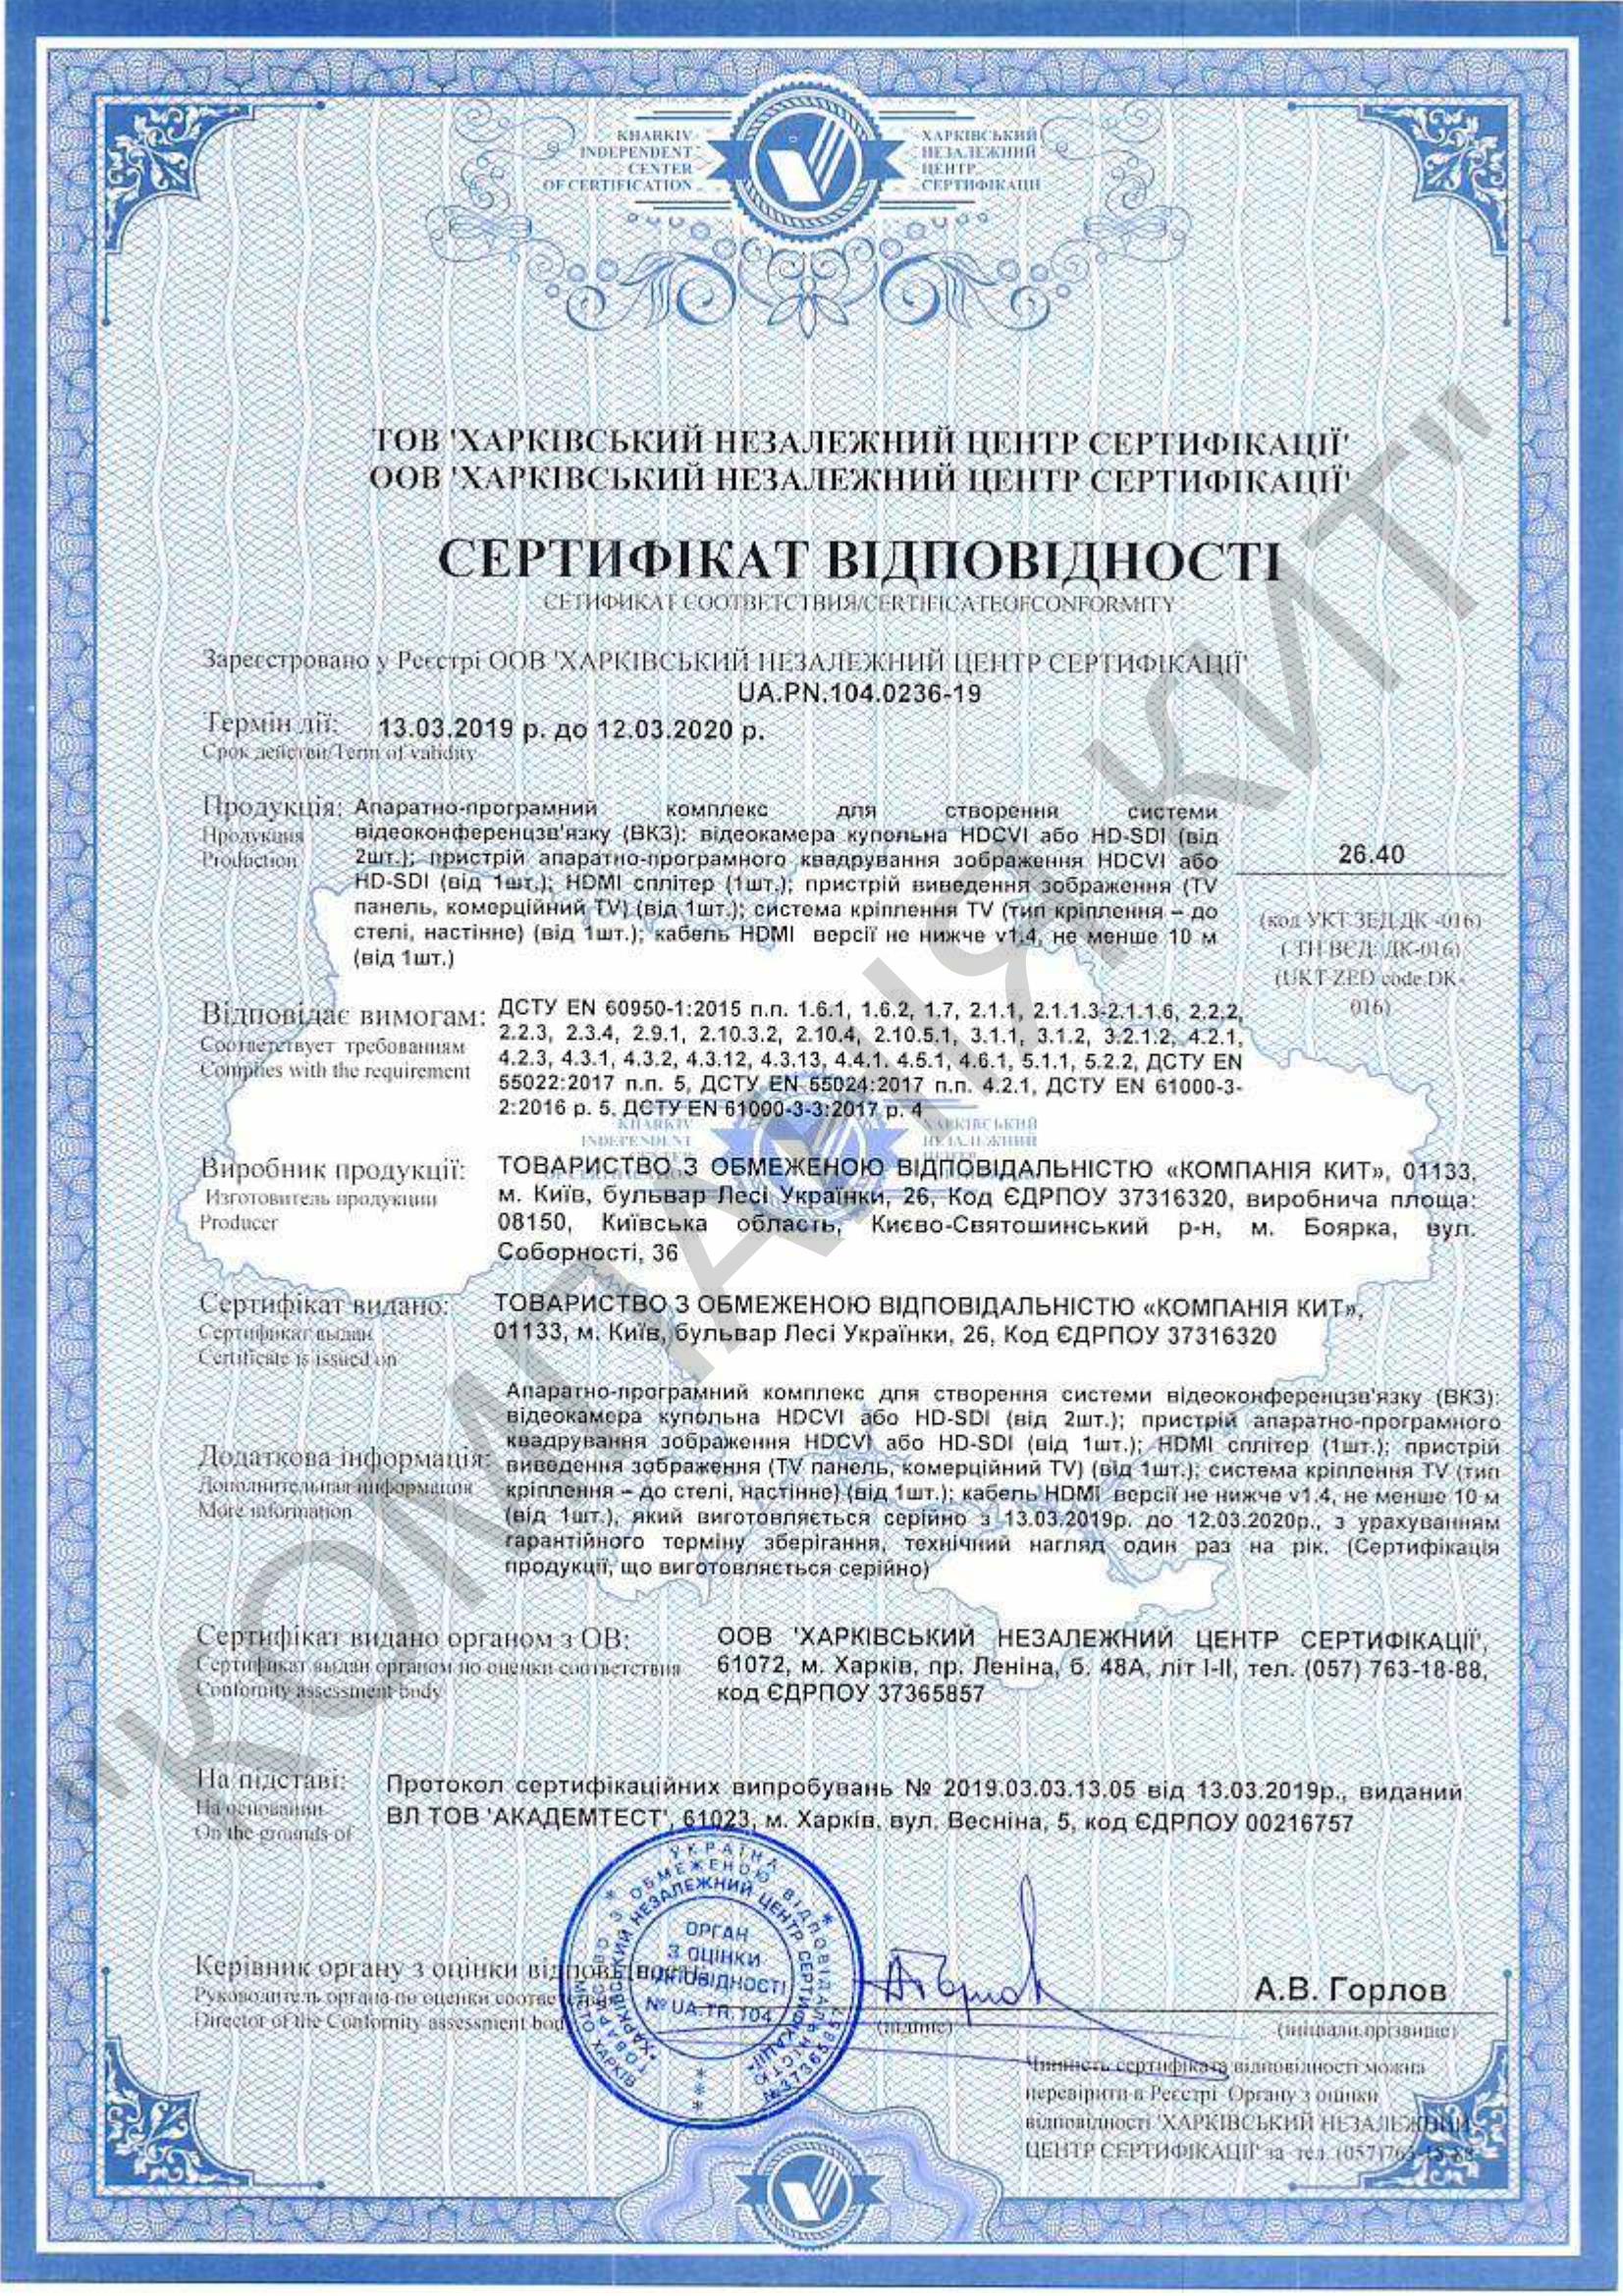 Сертифікат відповідності Апаратоно-прогорамний комплекс для створення системи ВКЗ